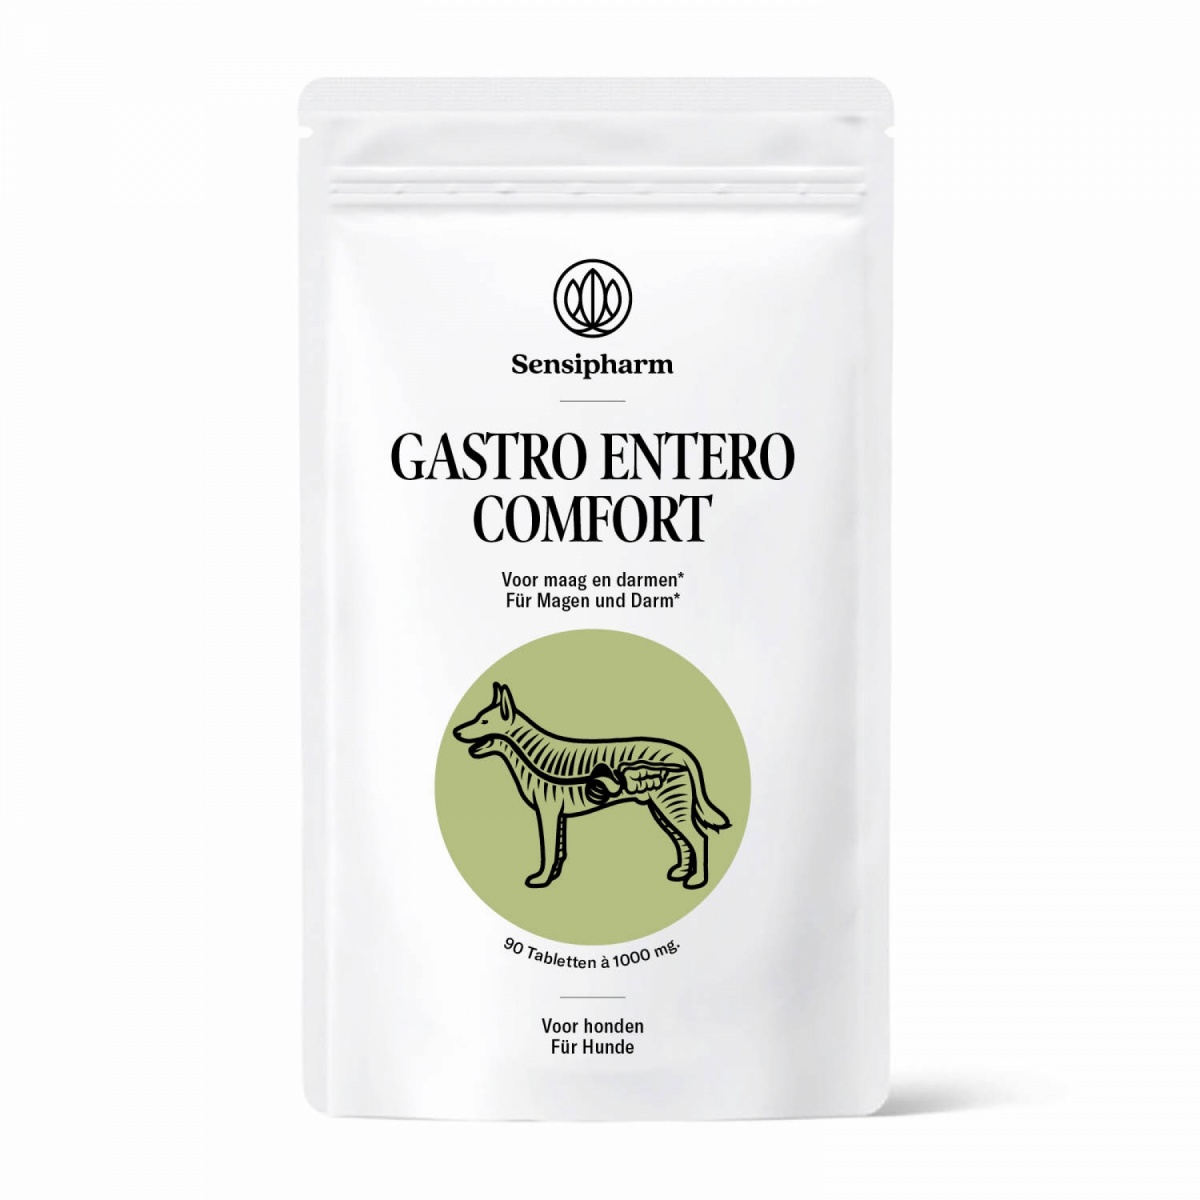 Gastro Entero Comfort, Gastritis Hund, Magen-Darm Hund, IBD Hund, übelkeit